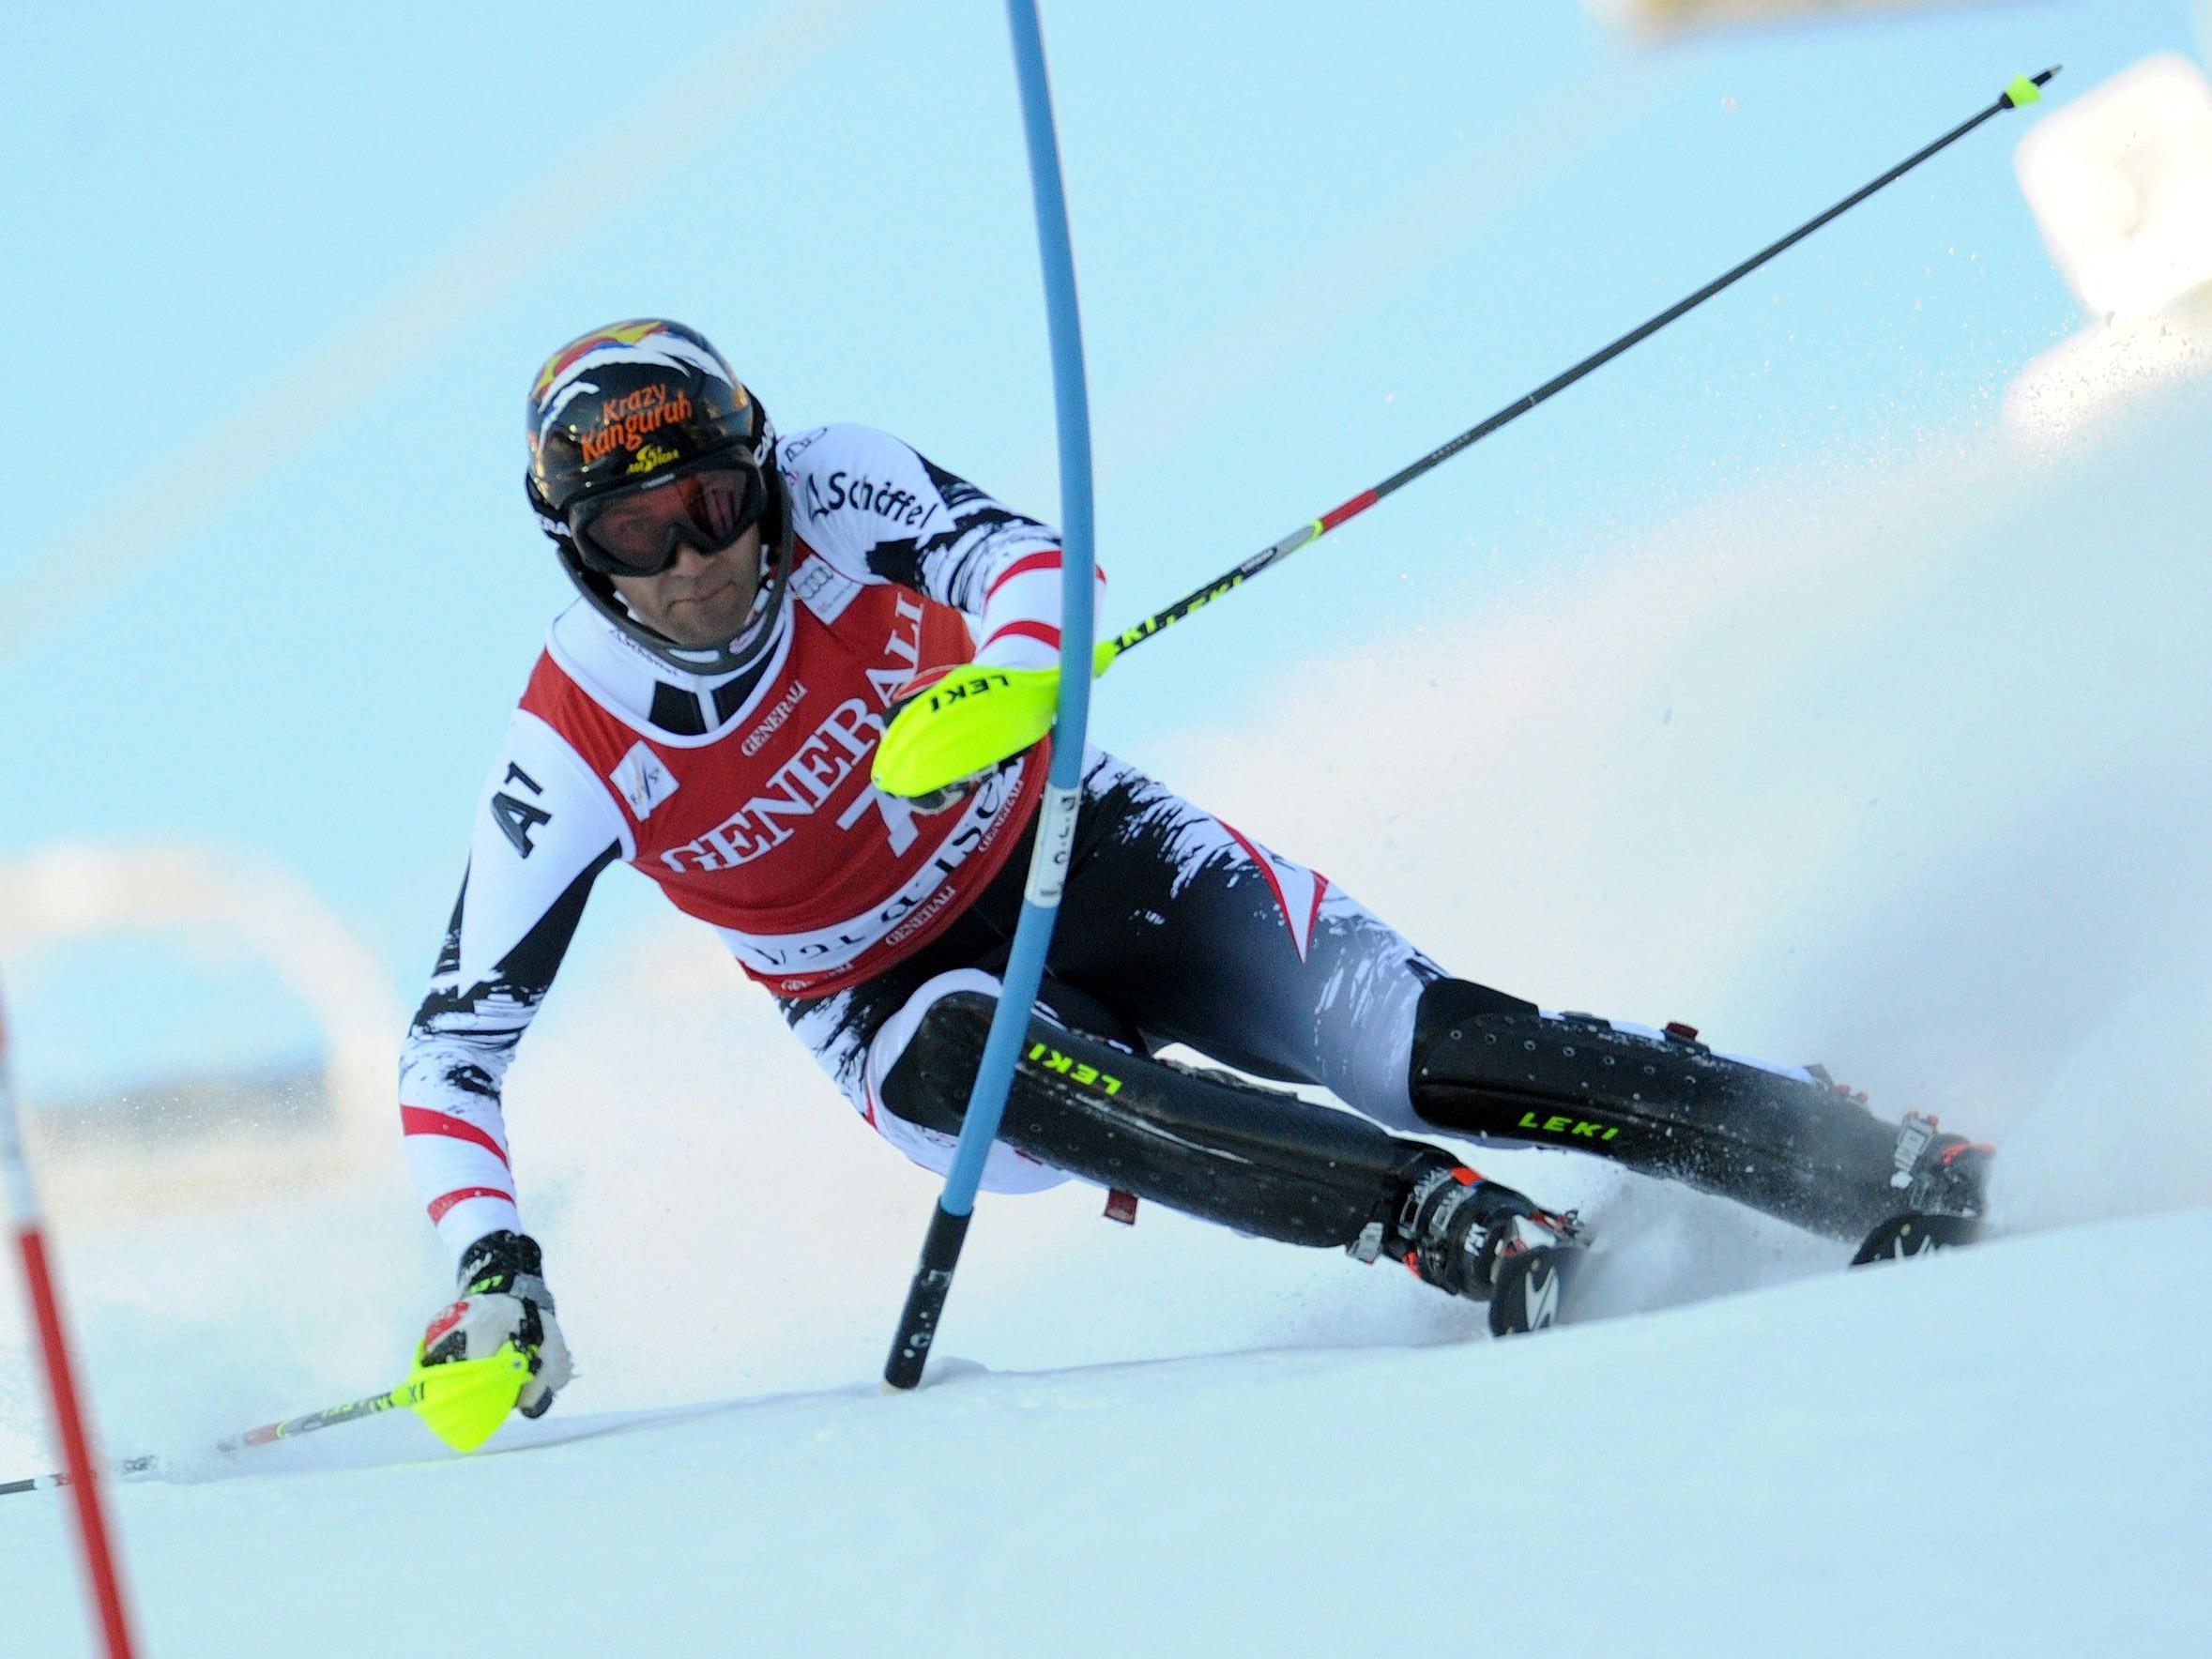 Mario Matt - mit stolzen 34 Lenzen der älteste Slalomsieger im Weltcup.